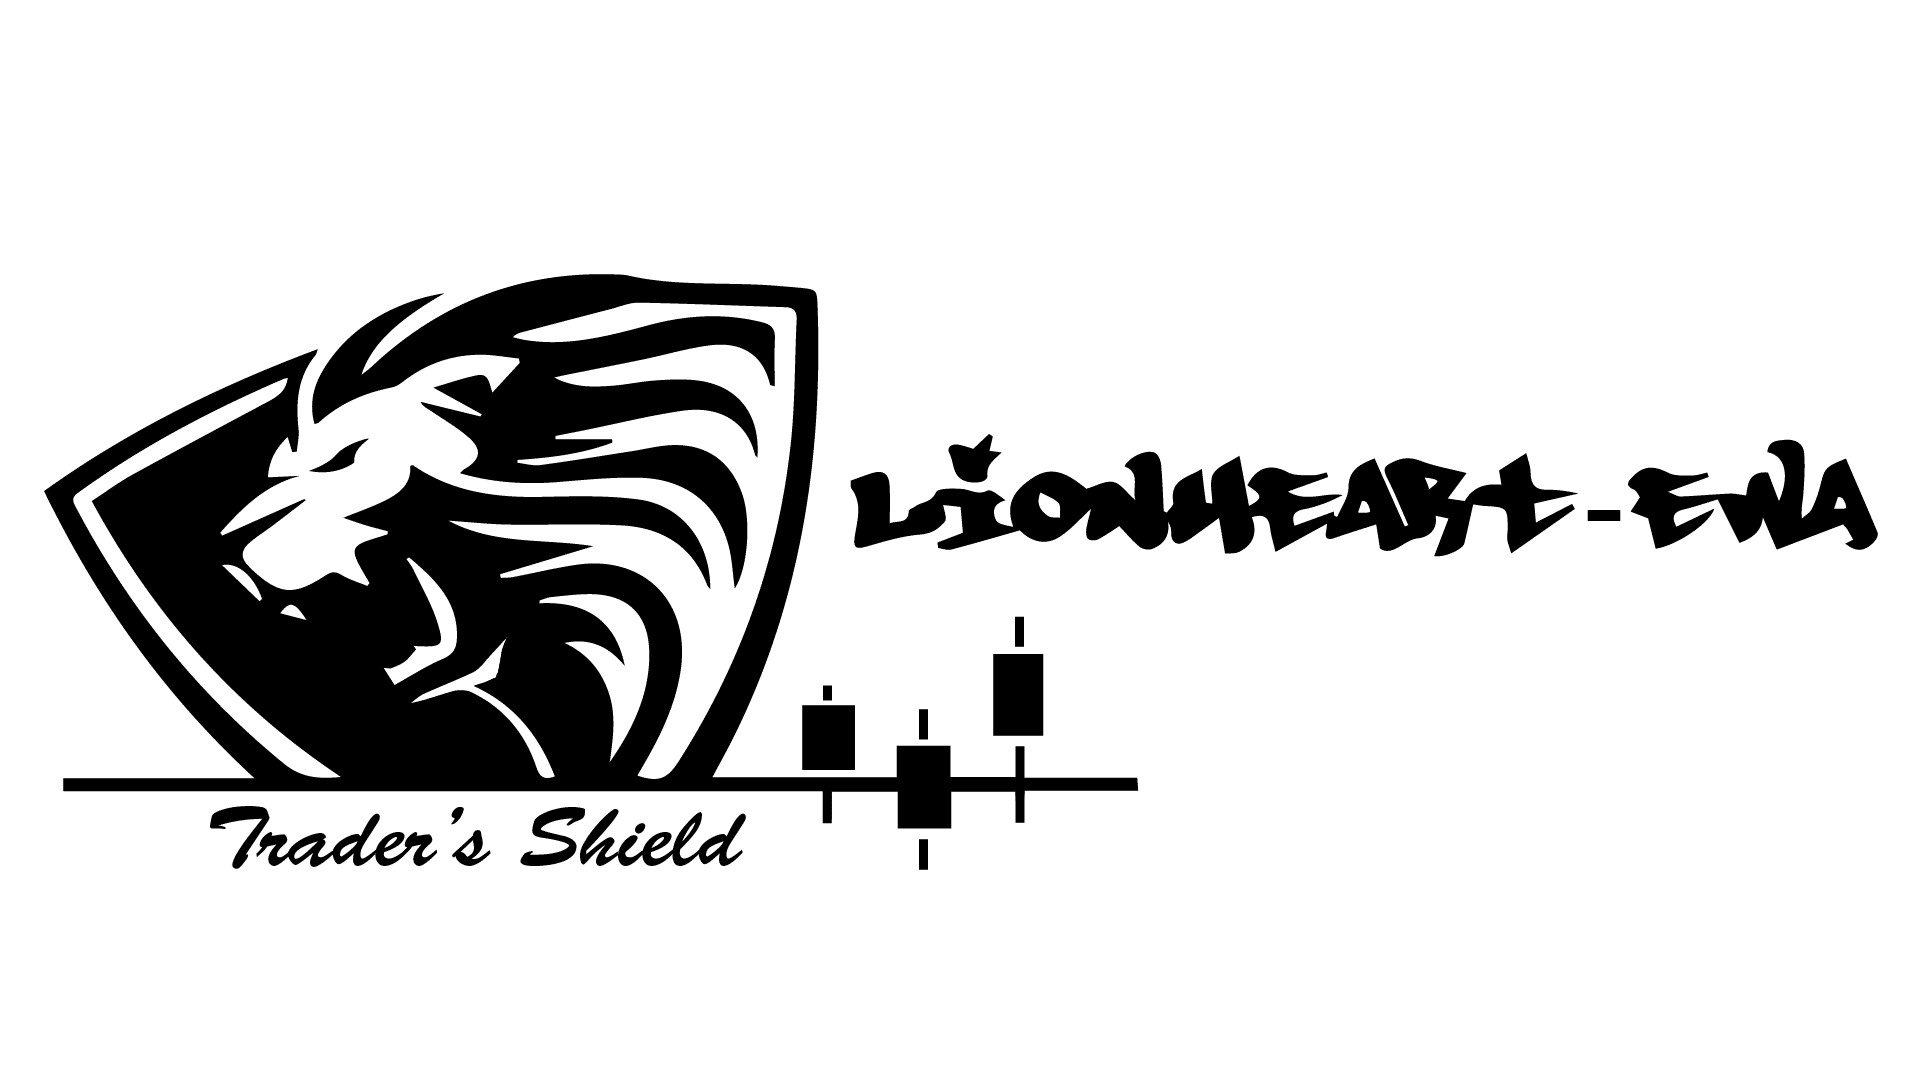 Lionheart Elliott Wave Analysis - About